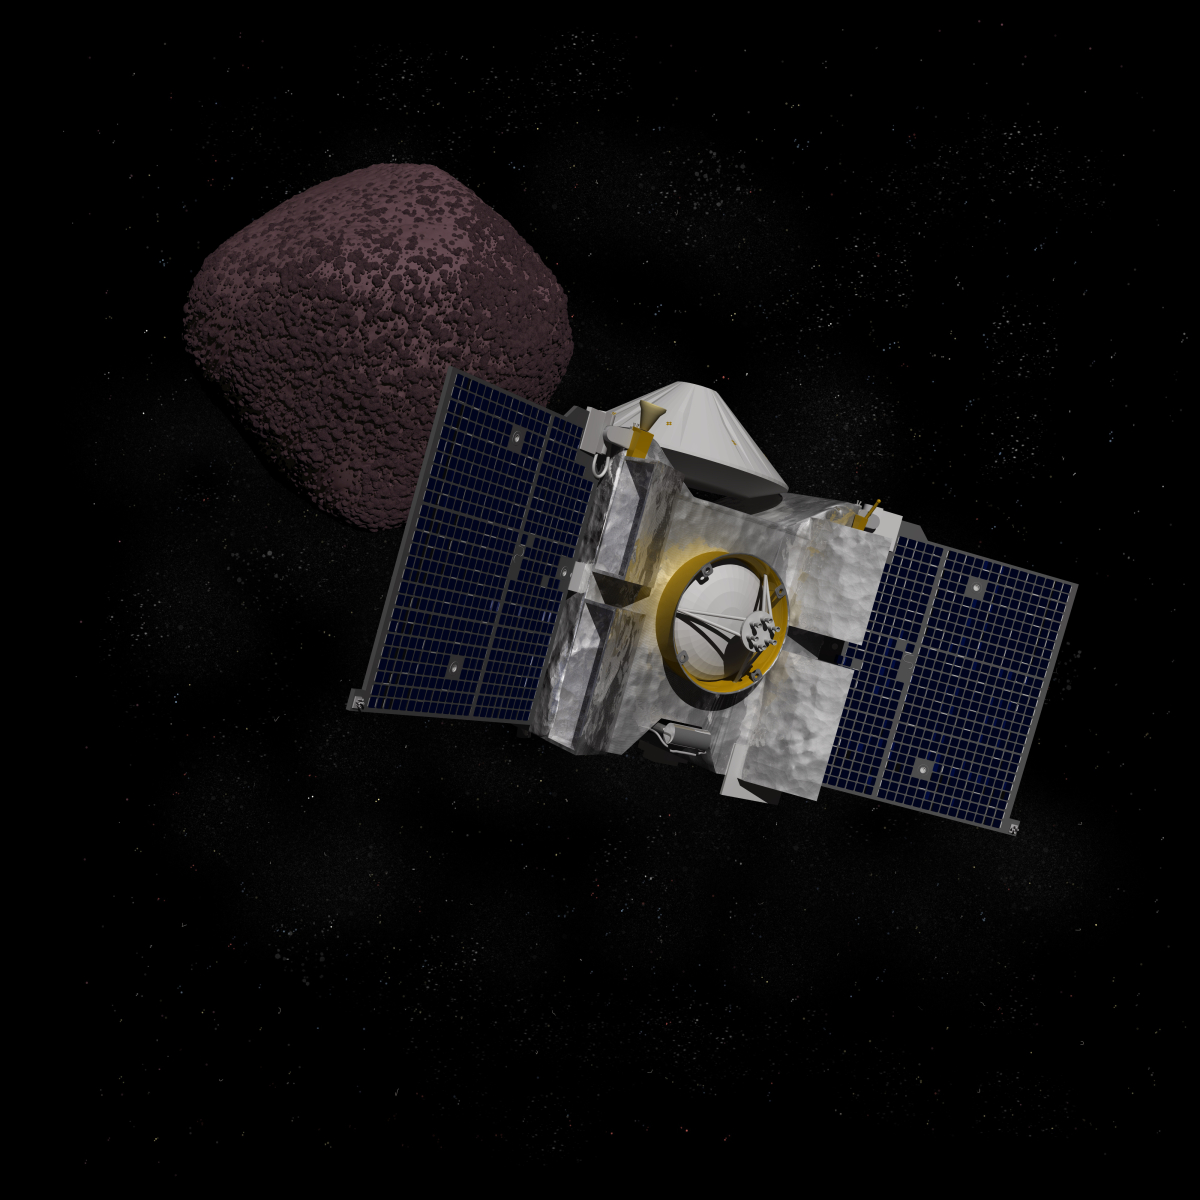 Osiris Rex: Teleskop macht Bild von Sonde, die Proben vom Asteroiden Bennu zurückbringen soll